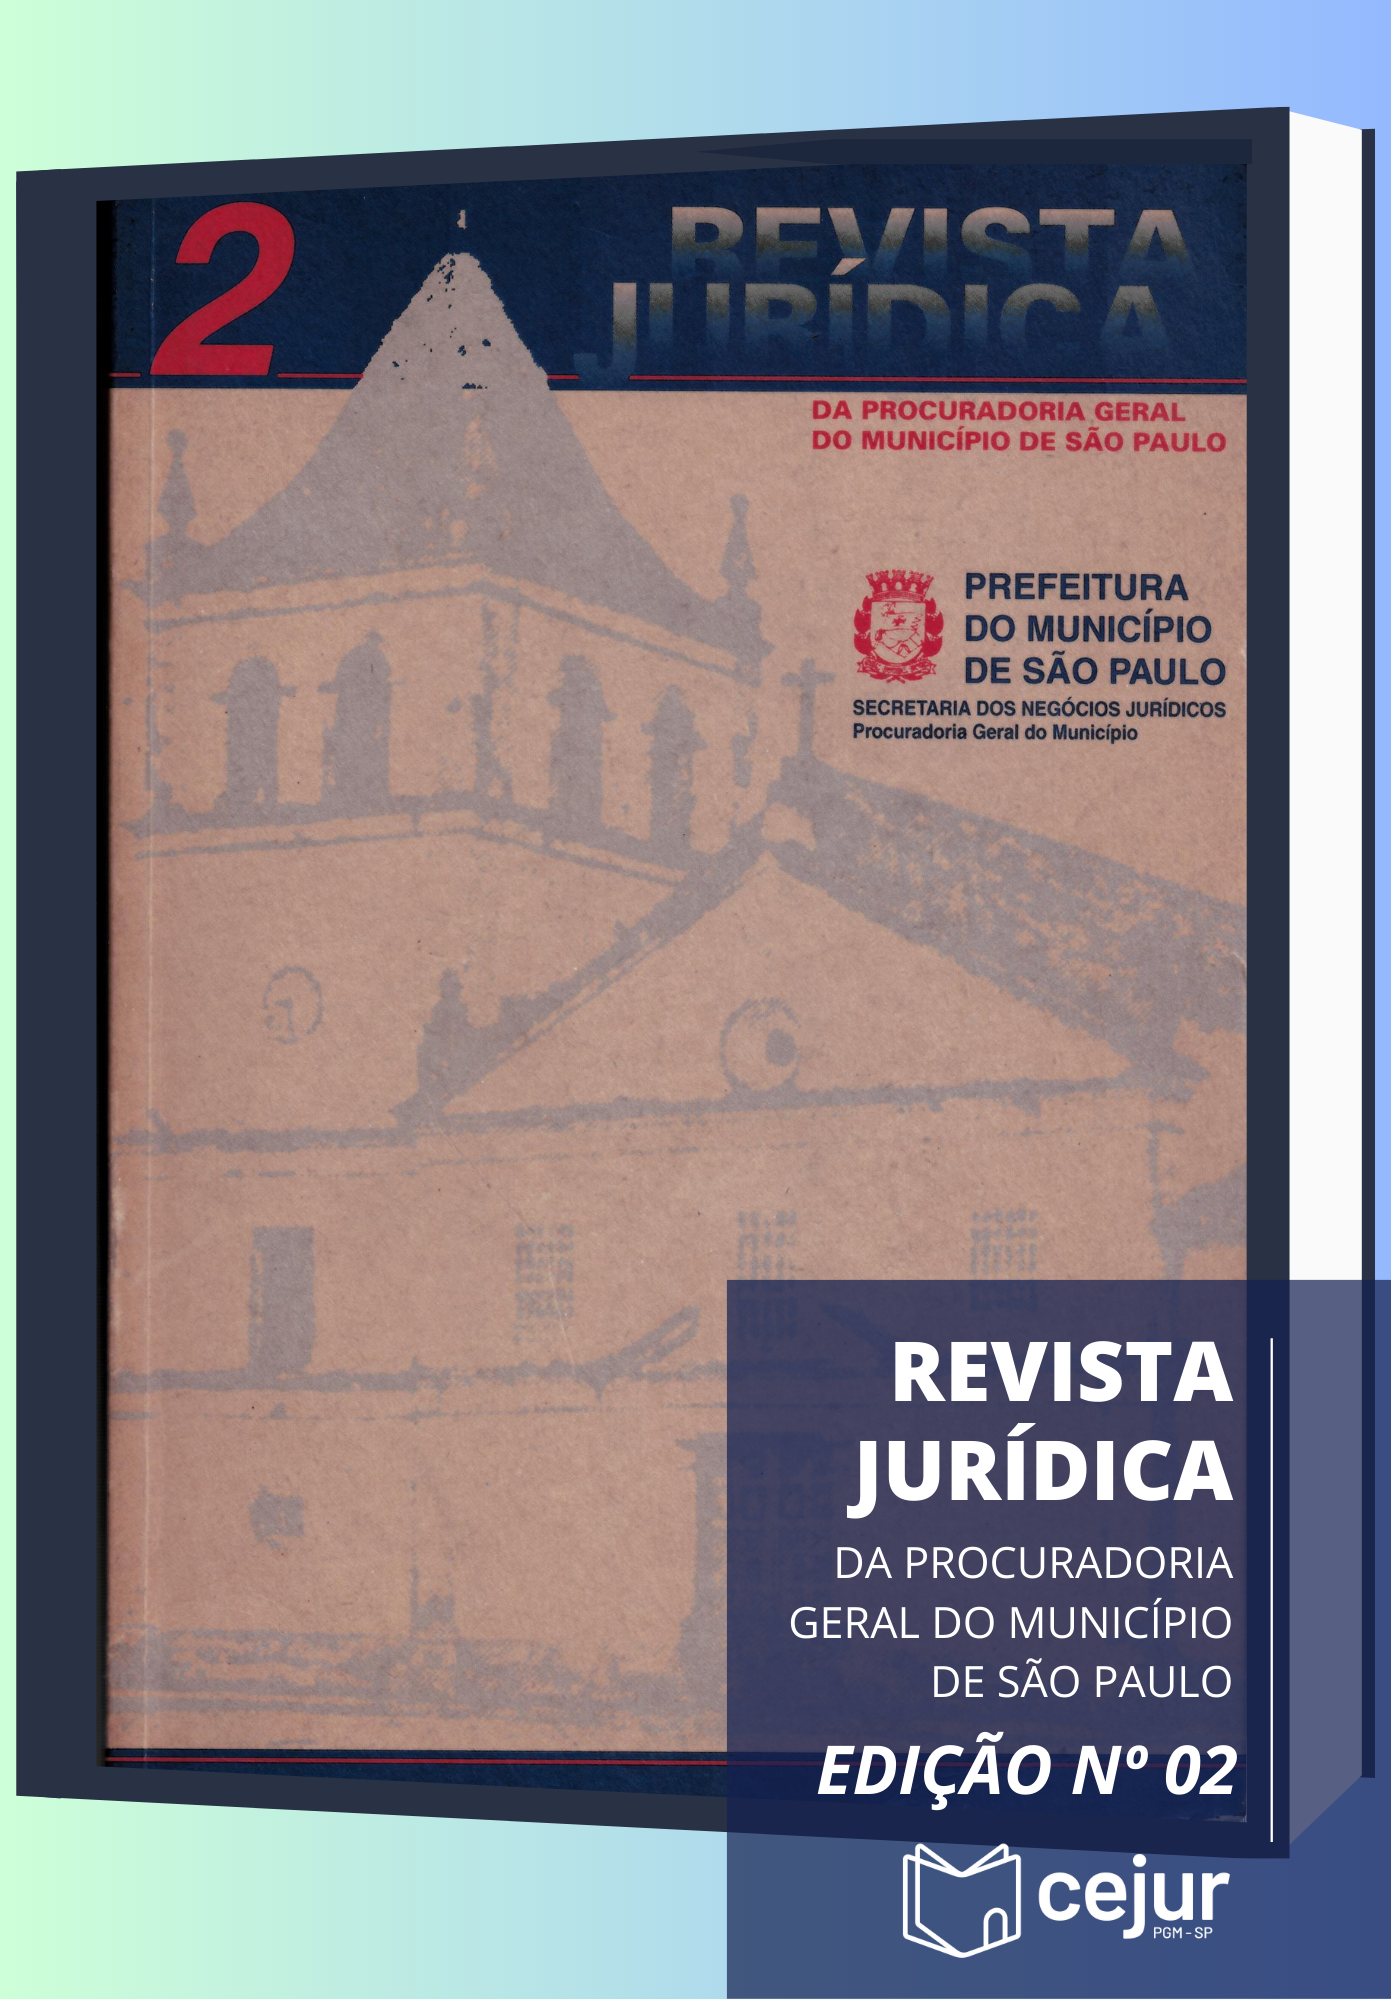 					View No. 2 (1996): Revista Jurídica da Procuradoria Geral do Município de São Paulo
				